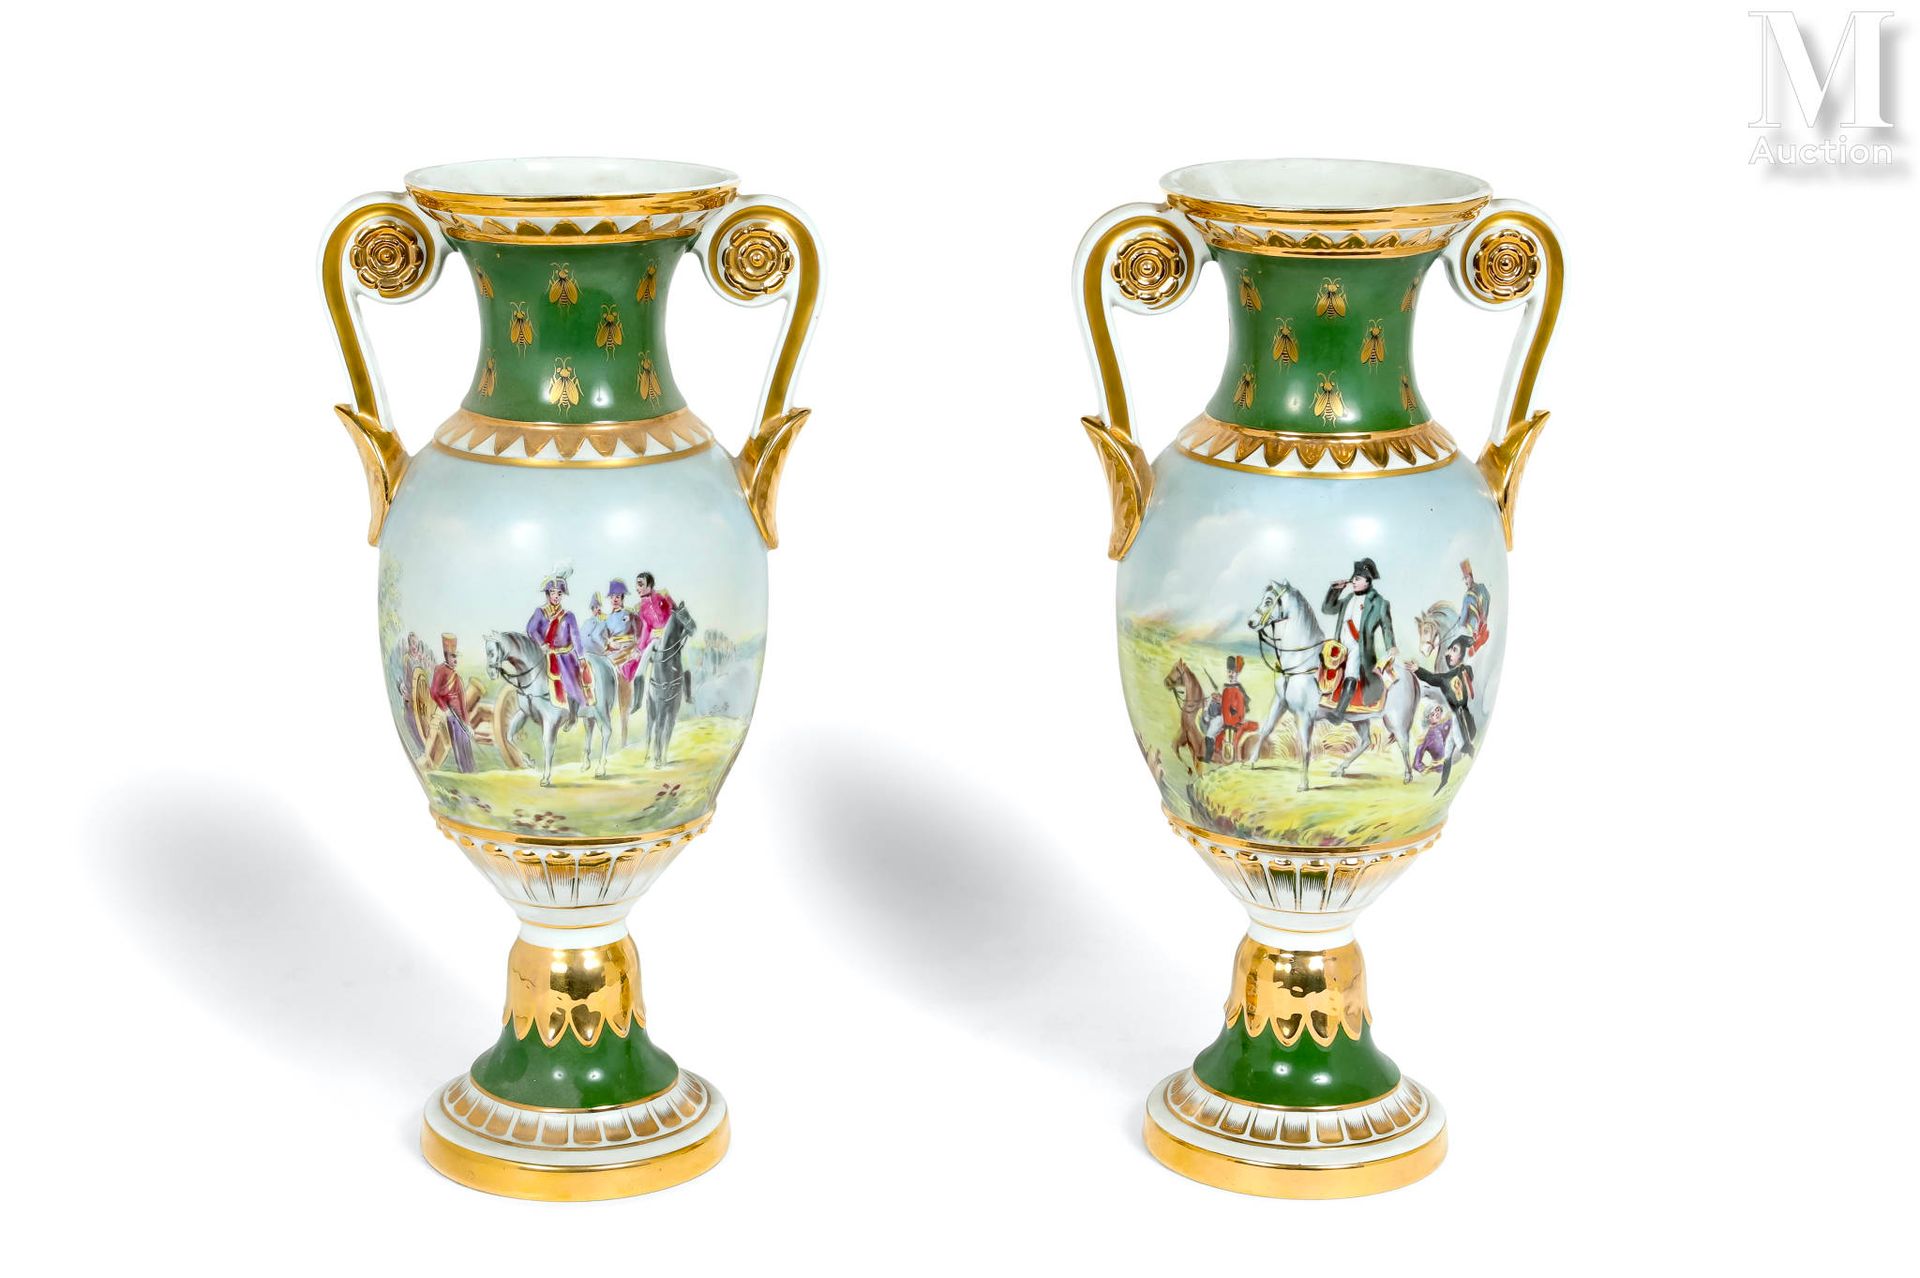 Paire de vases 巴黎瓷器，镀金并绘有代表拿破仑骑马的战斗场景的旋转门楣，绿色颈部有蜜蜂，侧面有卷轴把手
19世纪，帝国风格 
底座下有一个镀金的冠&hellip;